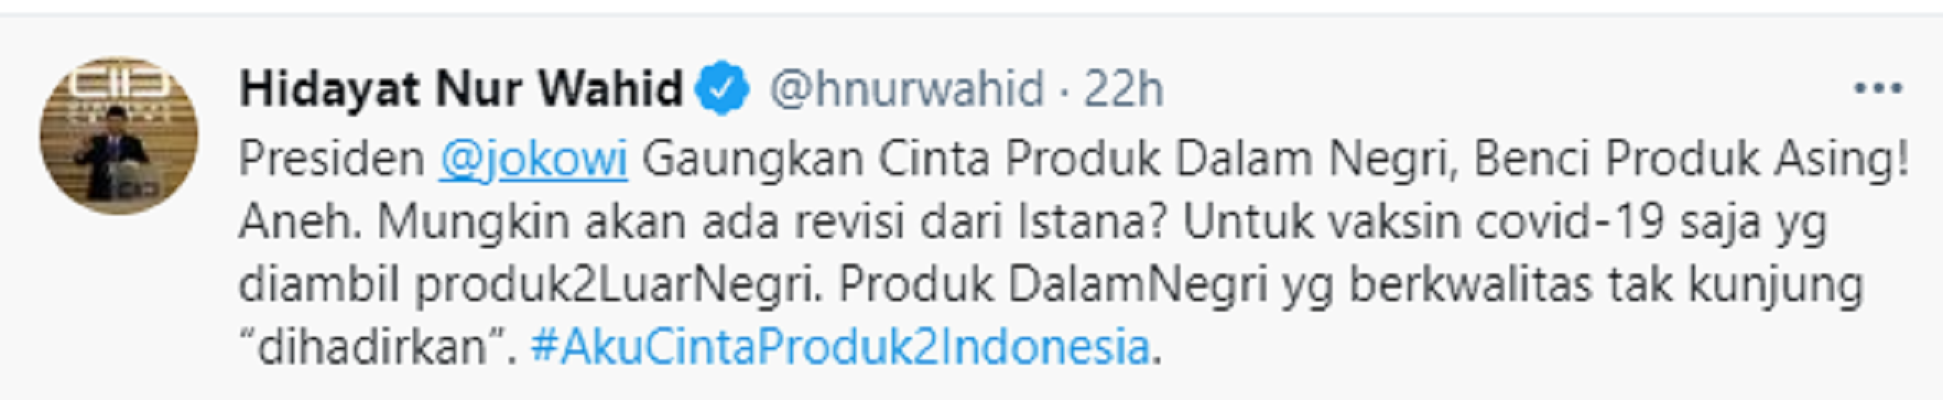 Cuitan Hidayat Nur Wahid soal kampanye benci produk asing.